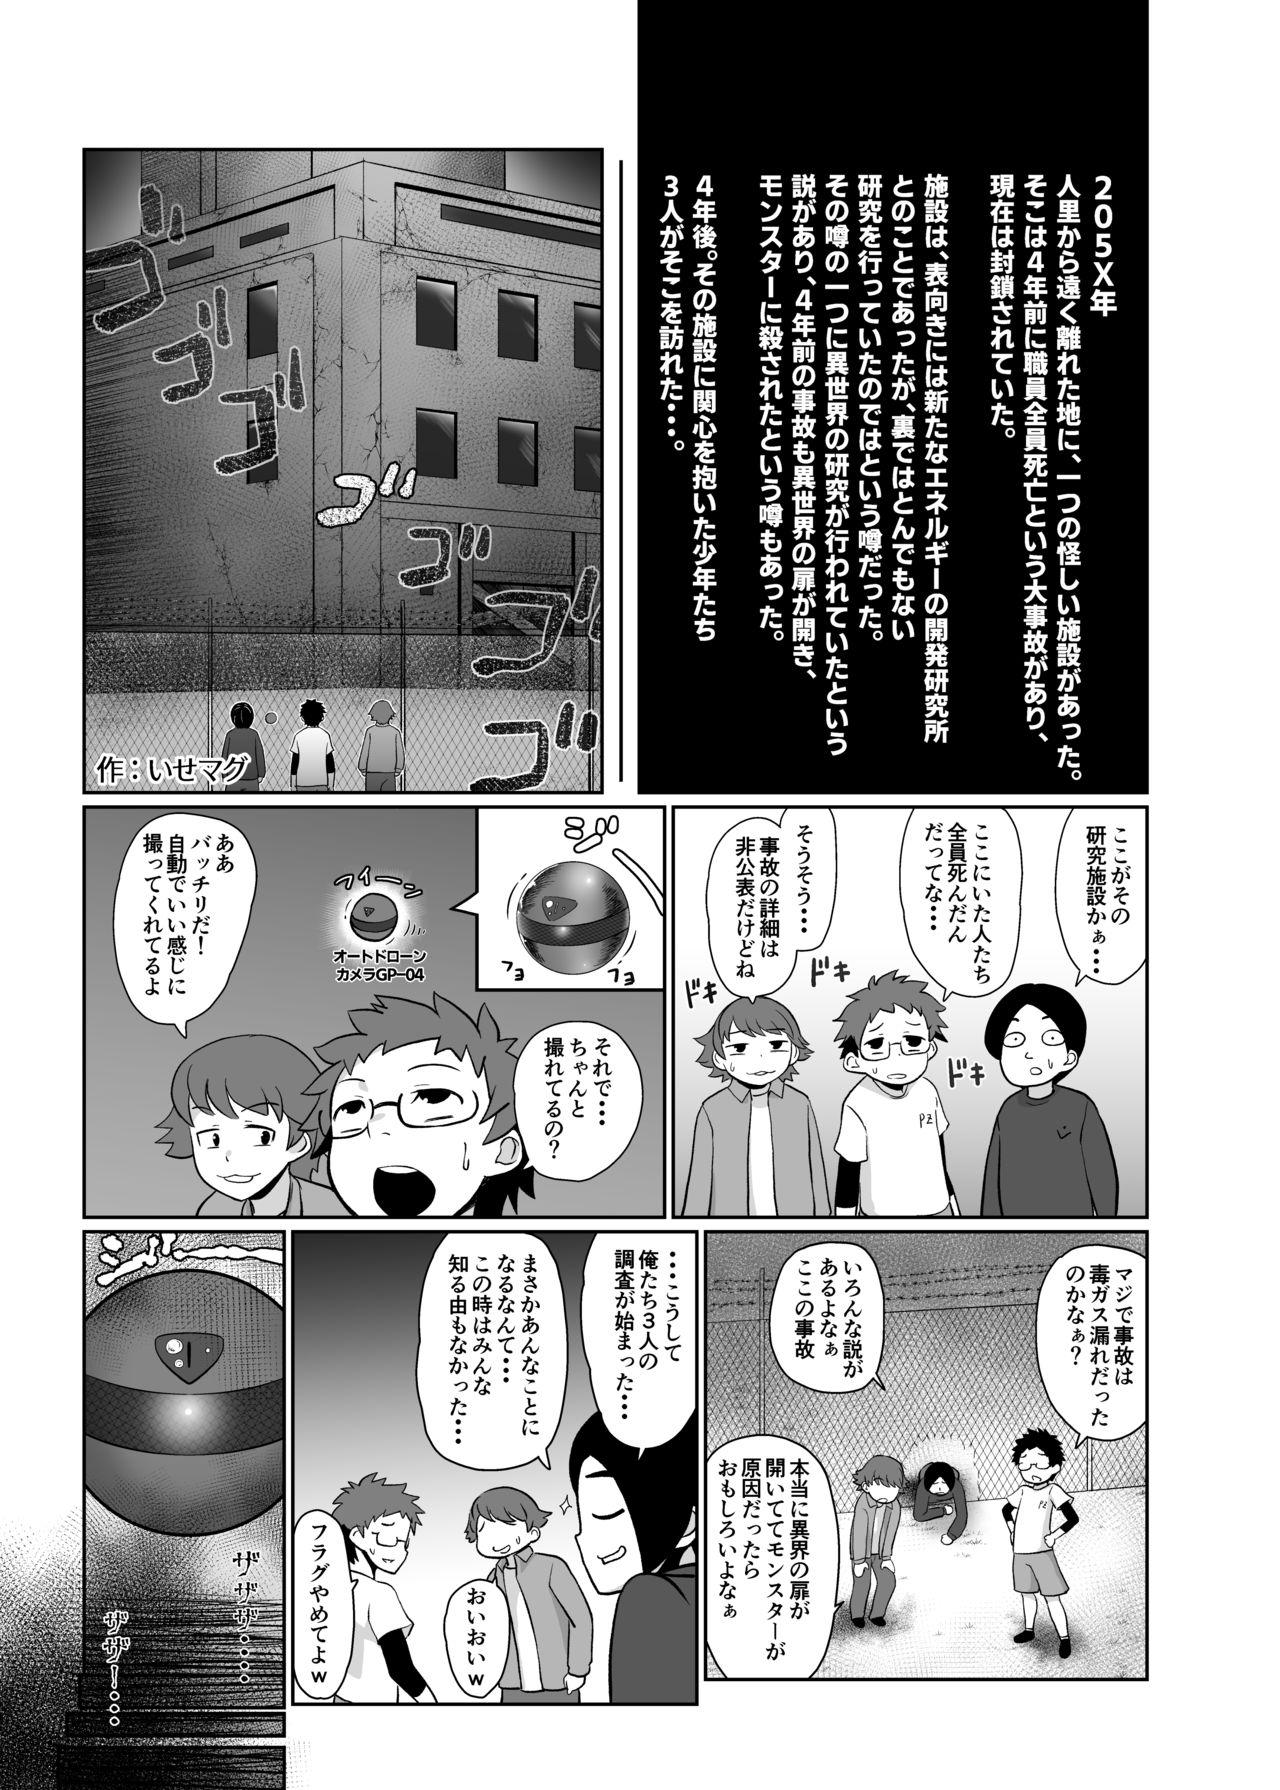 パイズリ専門雑誌『絶対乳挟射』Vol.2 67